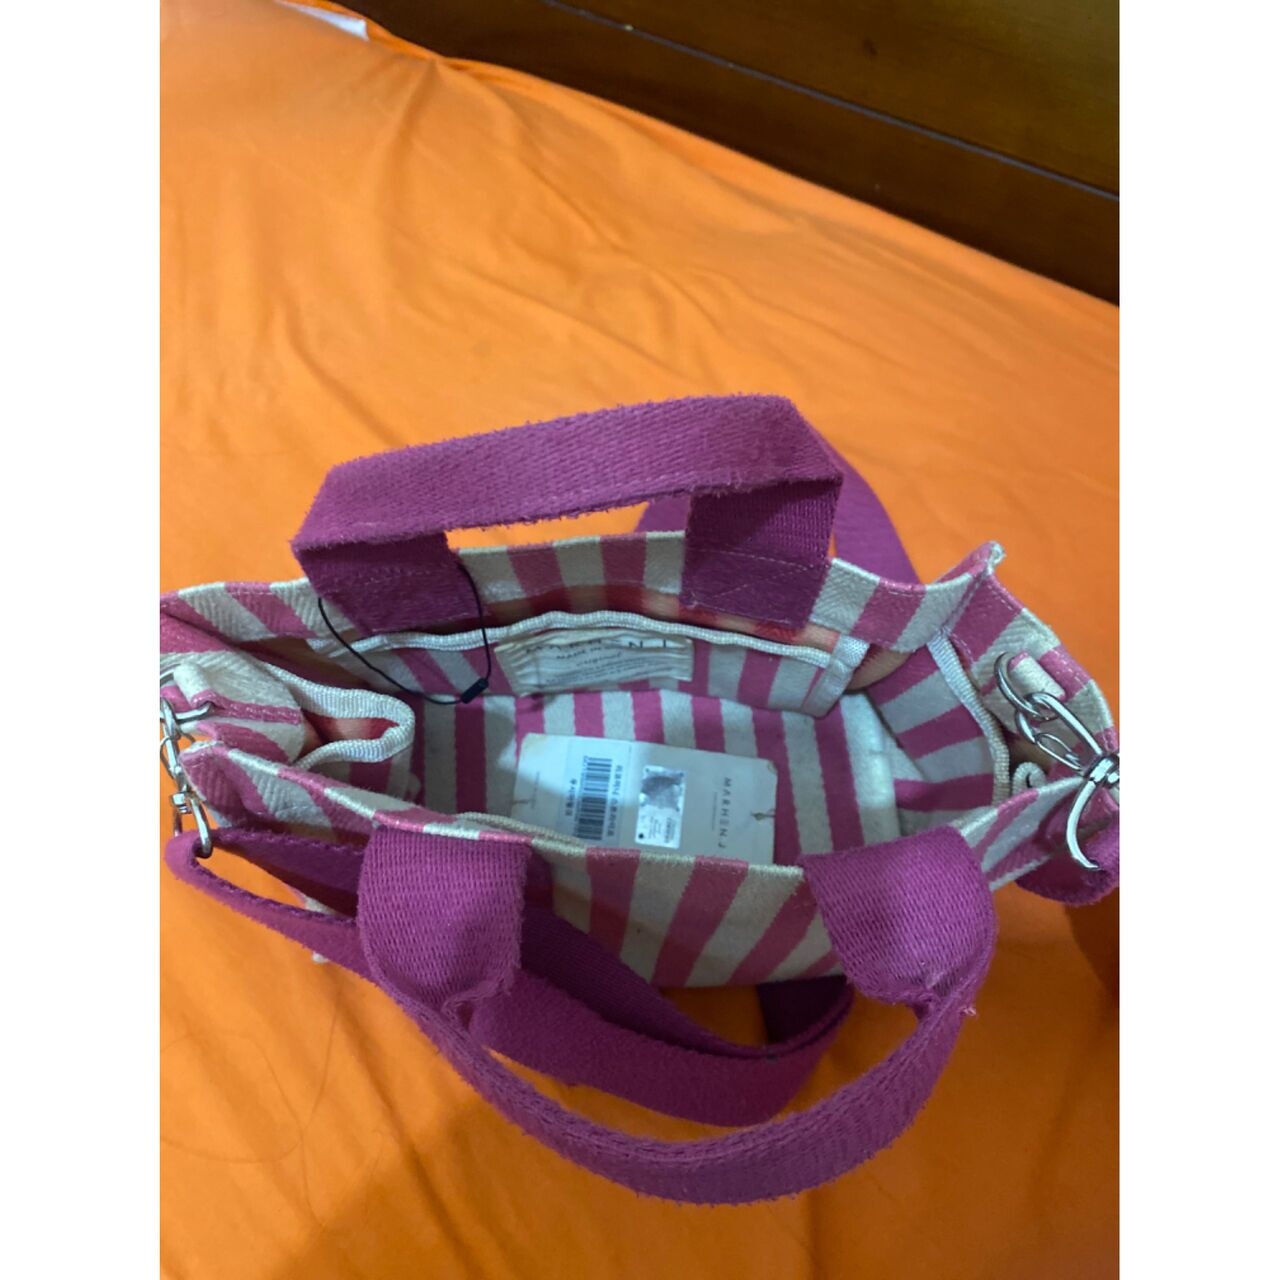 Marhen J Dusty Pink Stripes Sling Bag